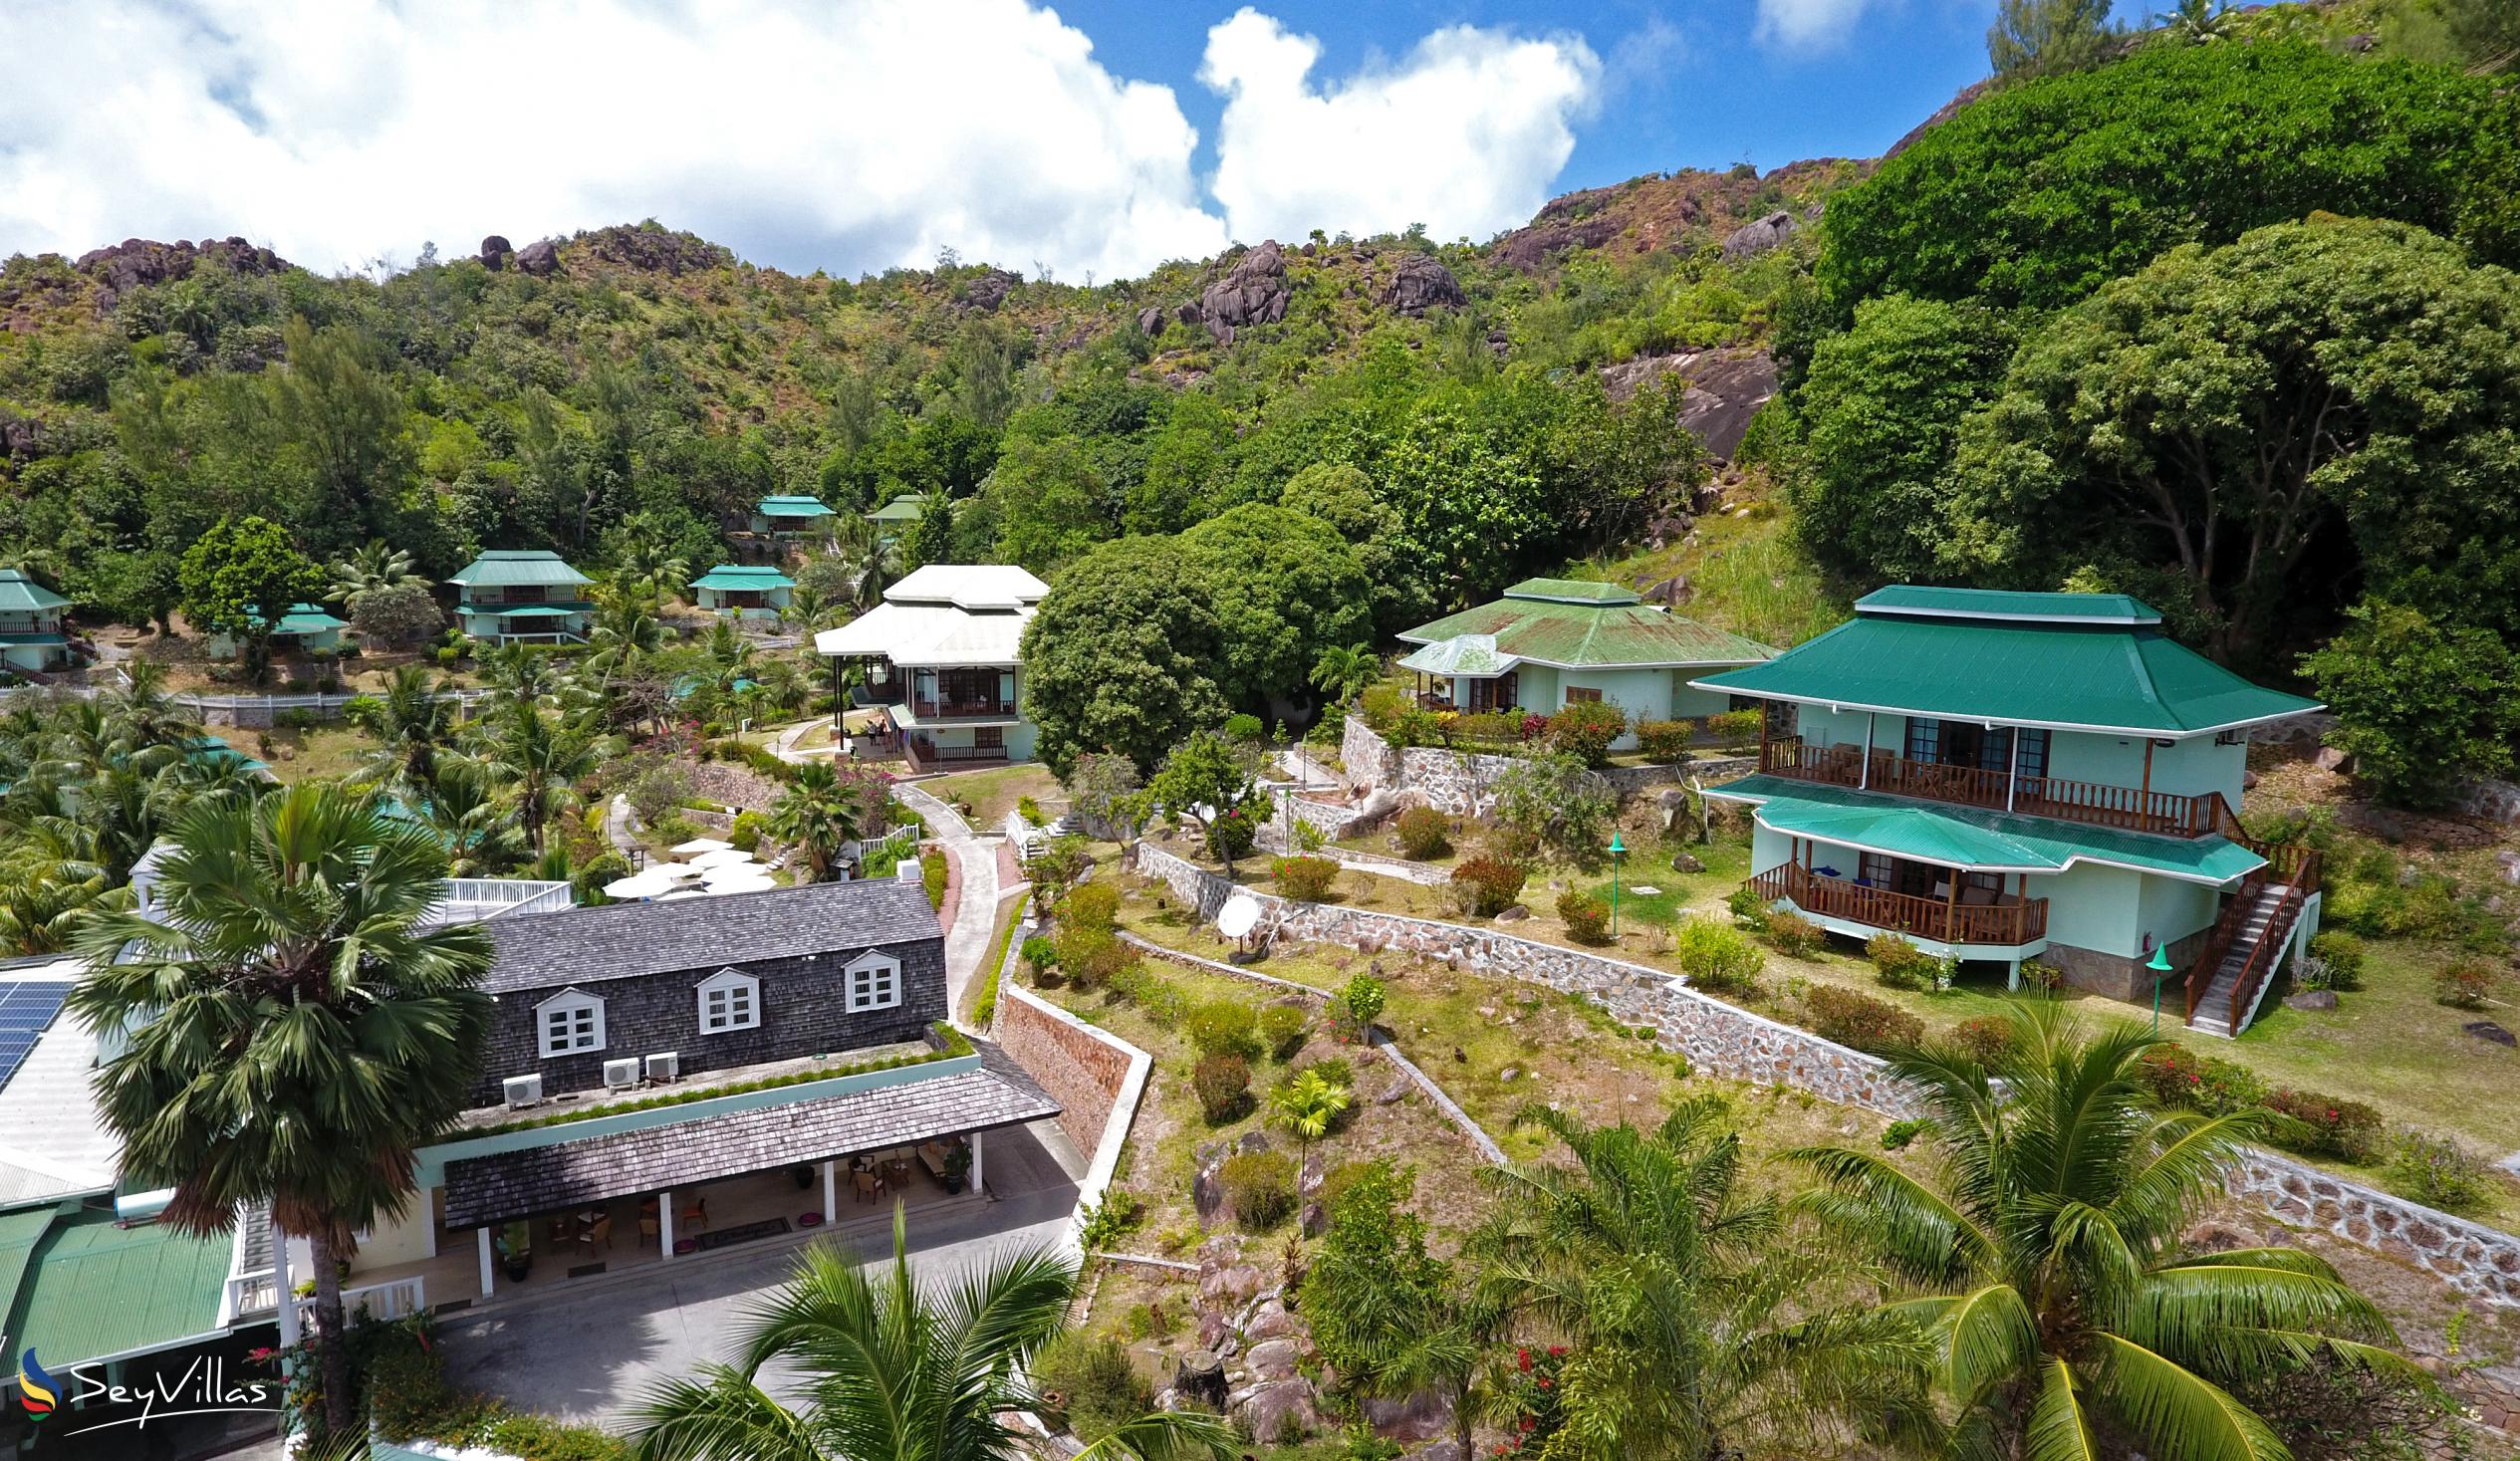 Foto 9: Hotel L'Archipel - Aussenbereich - Praslin (Seychellen)